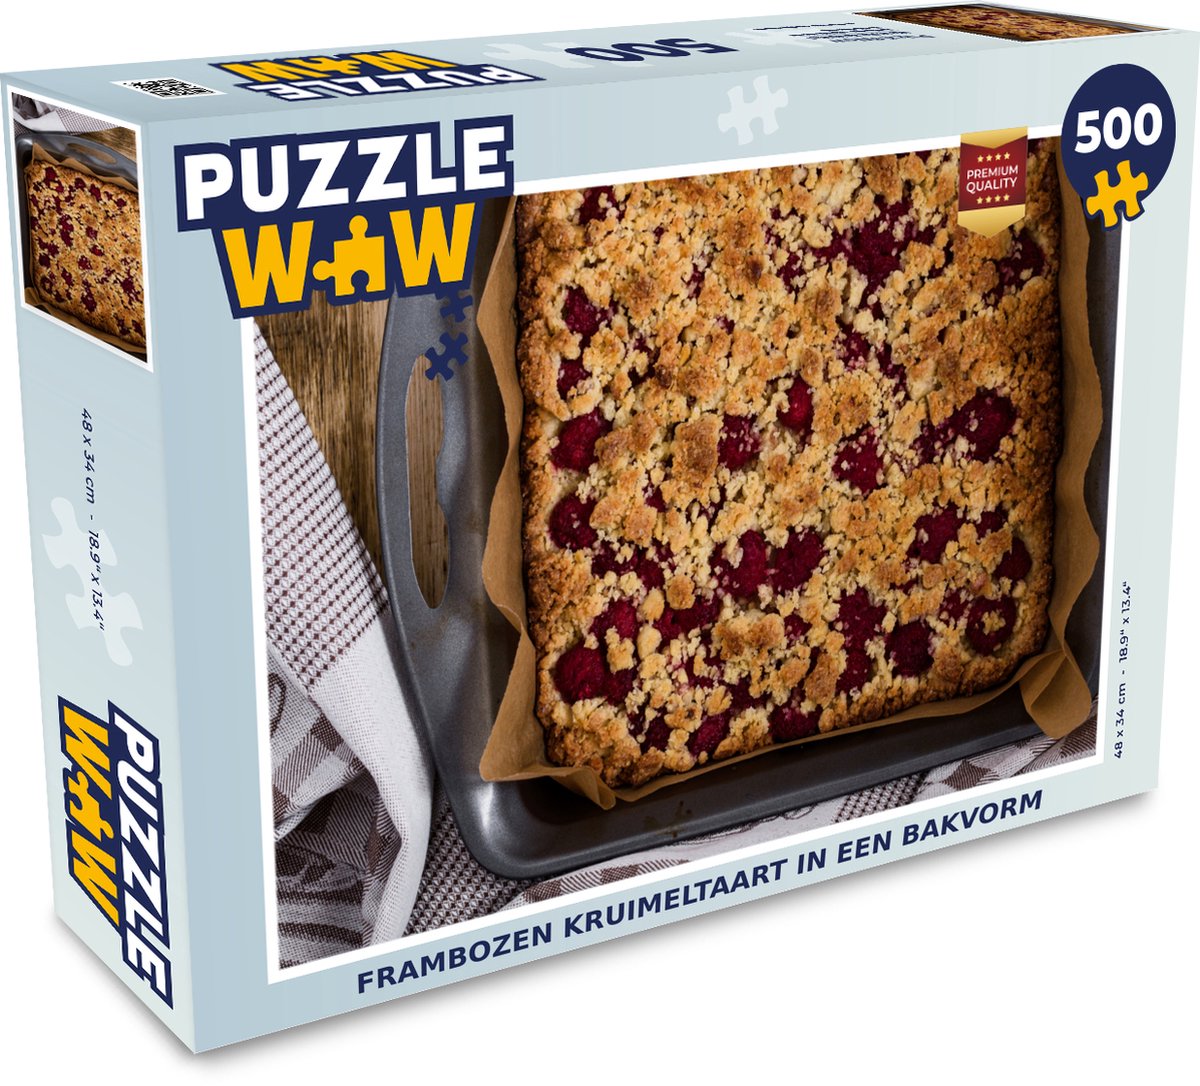 Afbeelding van product Puzzel 500 stukjes Kruimeltaart - Frambozen kruimeltaart in een bakvorm - PuzzleWow heeft +100000 puzzels